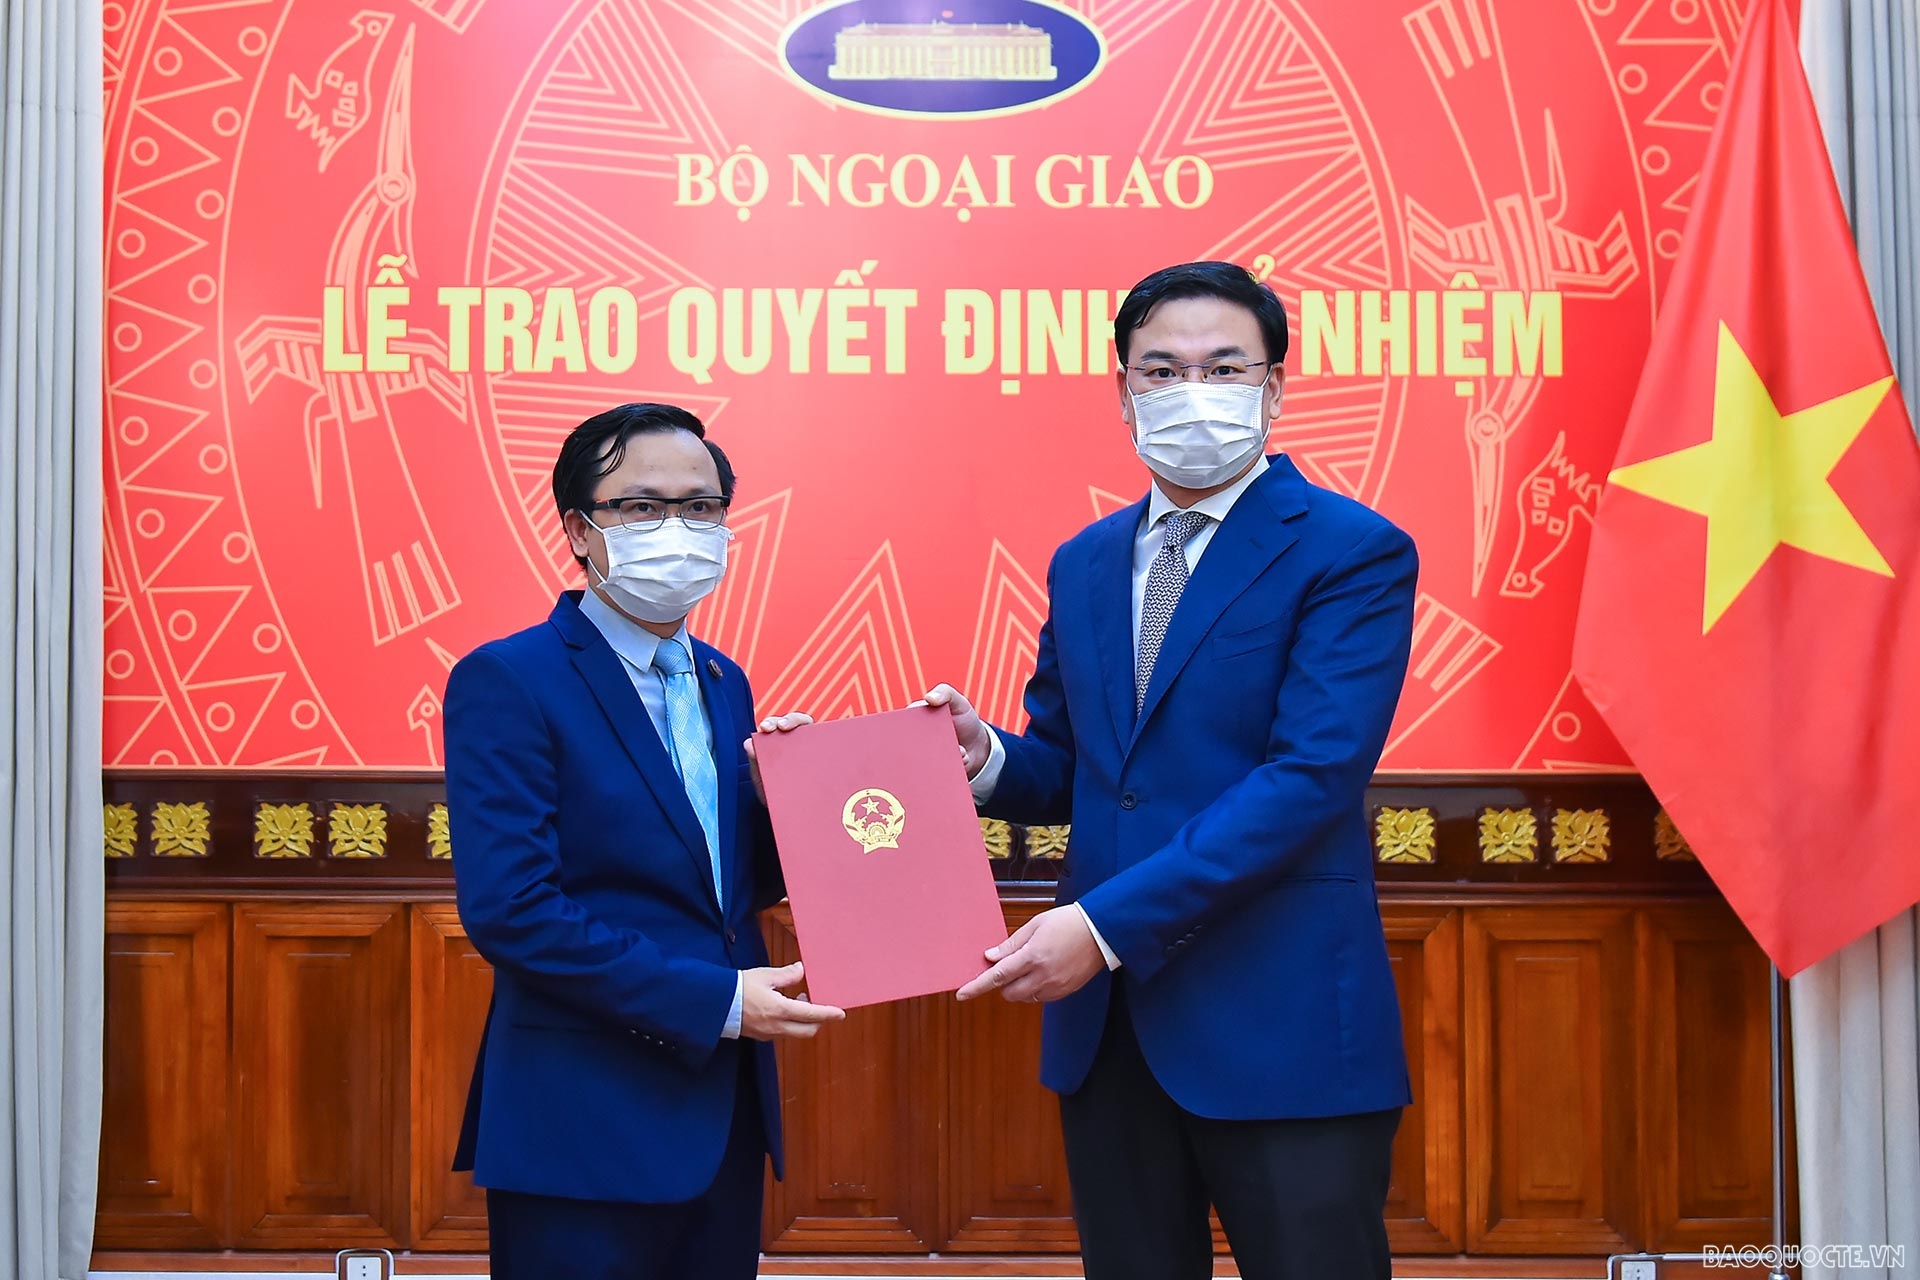 Thứ trưởng Ngoại giao Phạm Quang Hiệu trao quyết định bổ nhiệm ông Lê Văn Hường, Tập sự Phó Cục trưởng, Cục Cơ yếu, giữ chức Phó Cục trưởng Cục Cơ yếu.